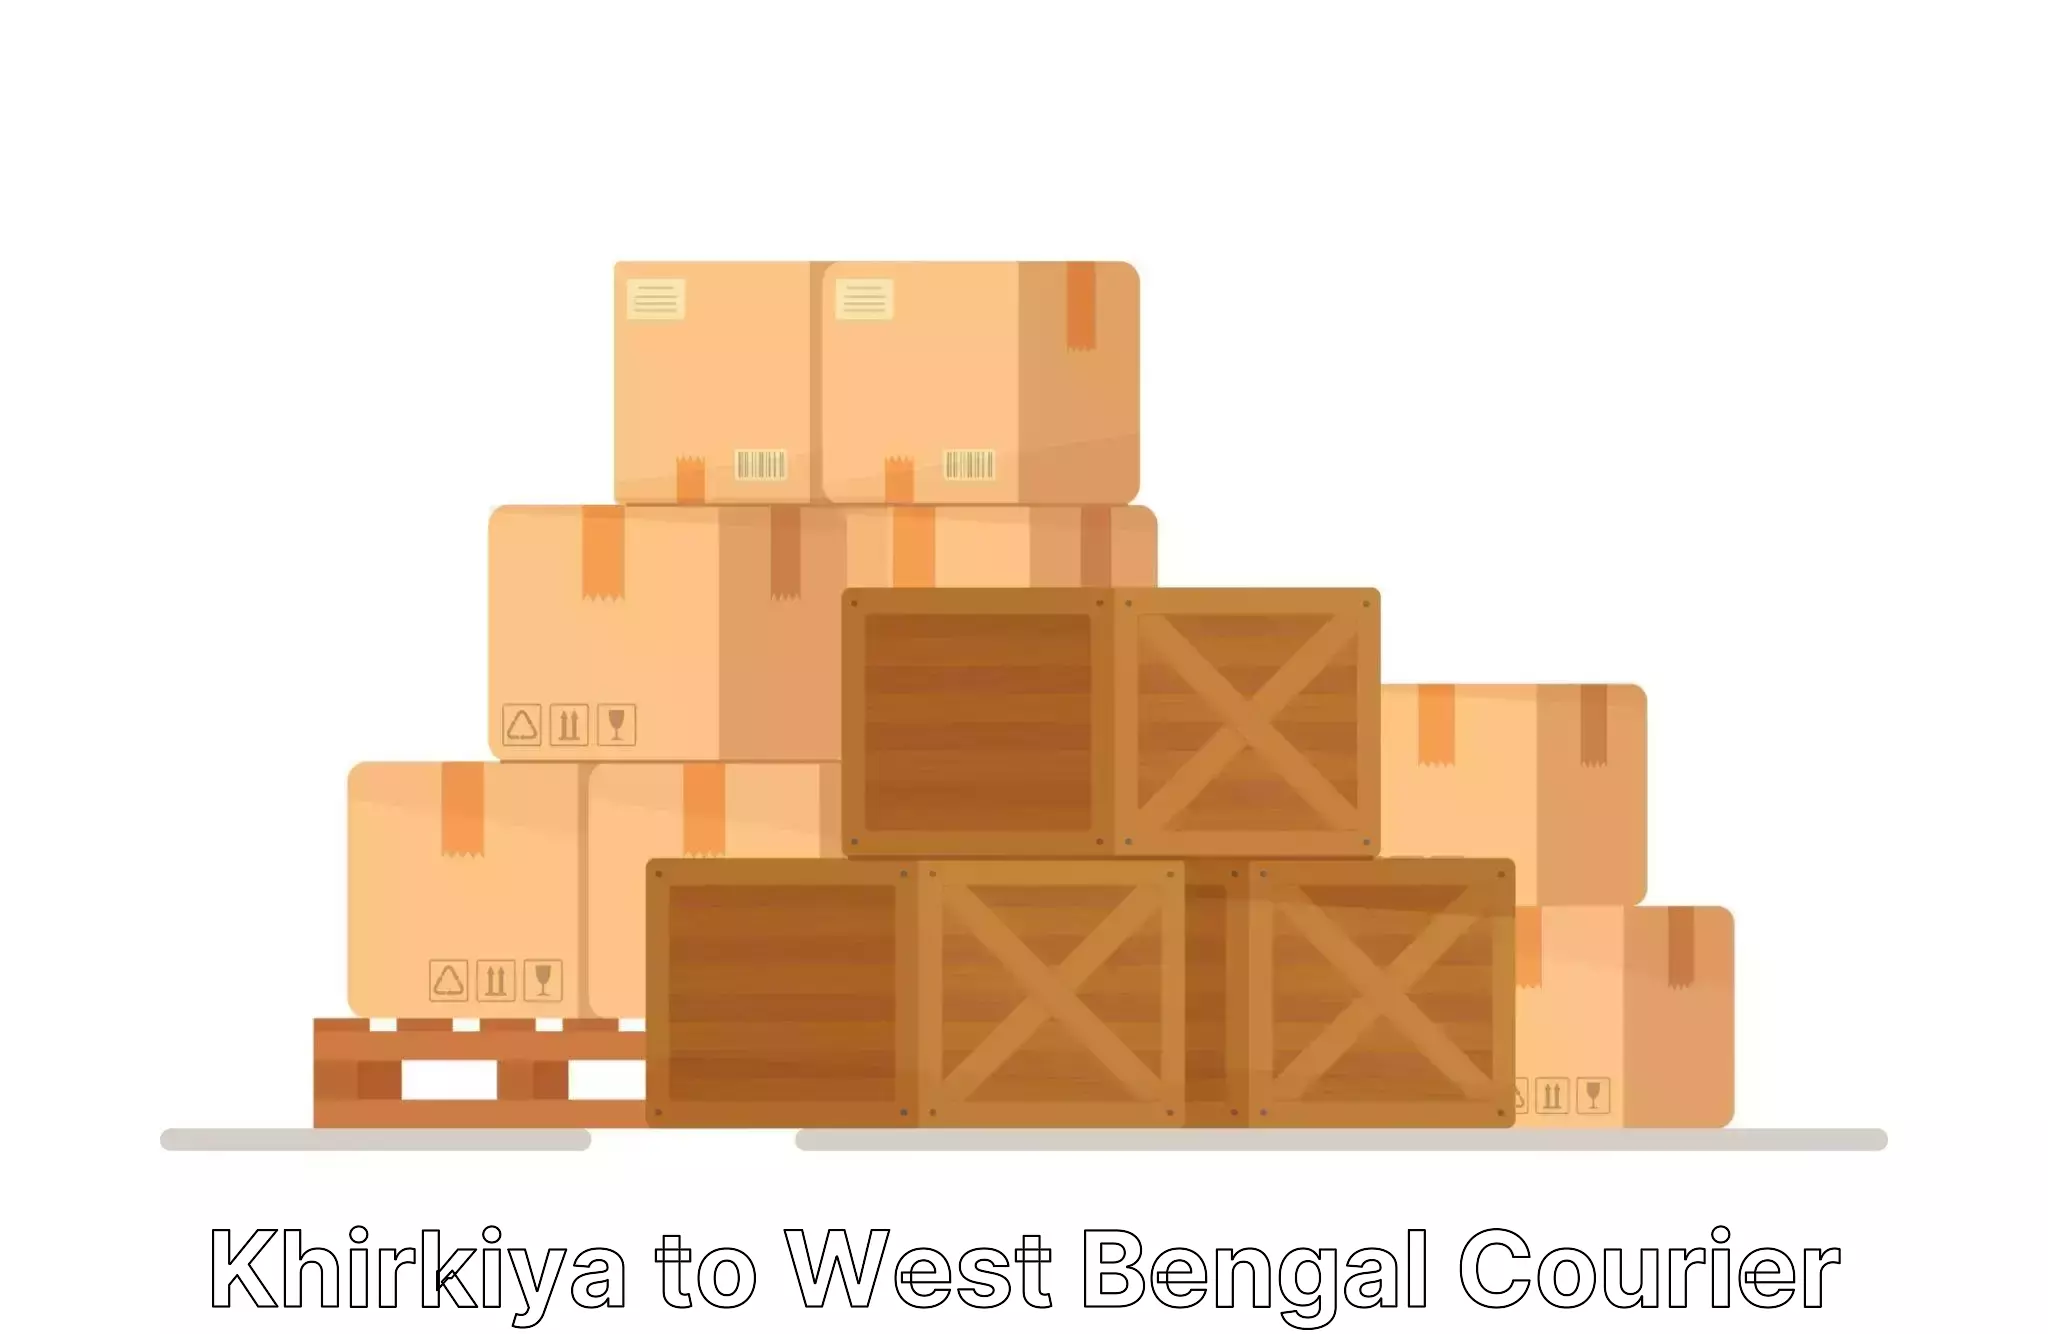 Furniture moving plans in Khirkiya to West Bengal